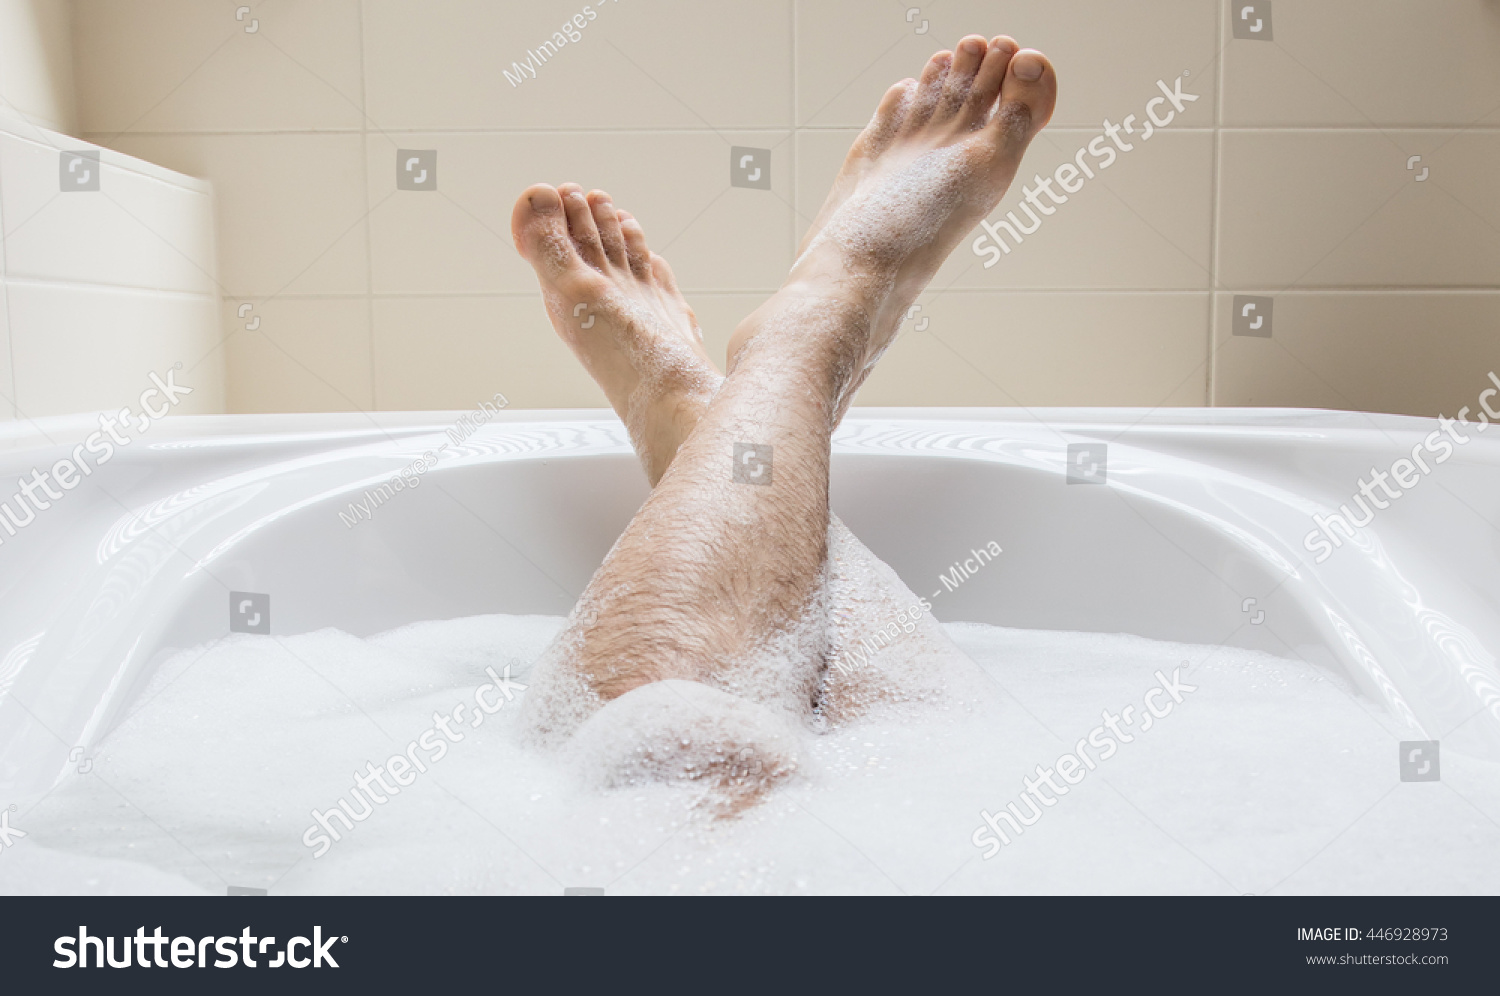 Купаюсь в ванной трусы. Мужские ноги в ванной. Мужские ноги в ванной с пеной. Мужские ножки в ванной. Парень в ванне ноги.